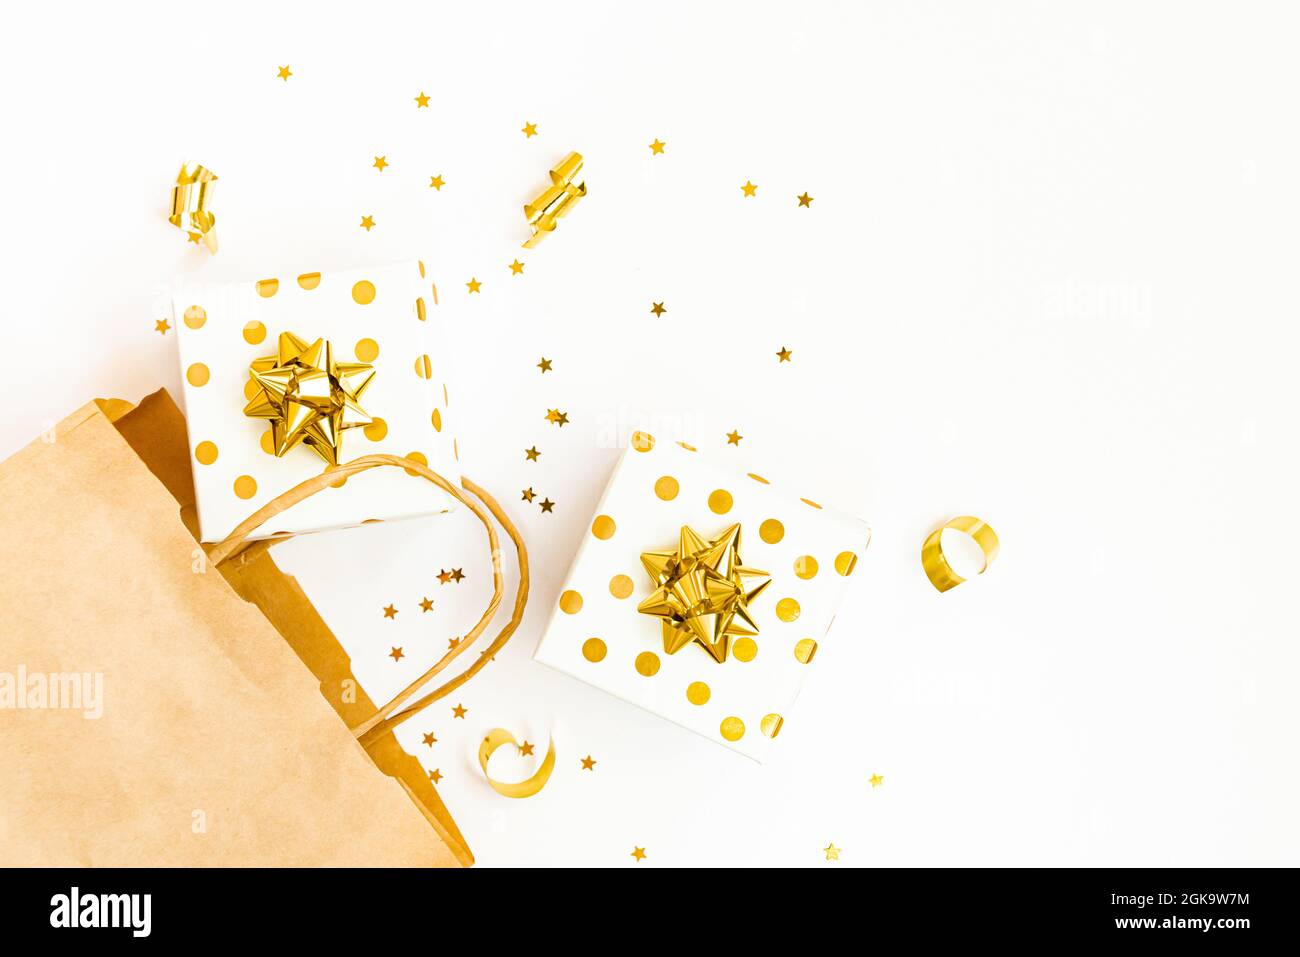 Vista dall'alto delle confezioni regalo punteggiate d'oro, una borsa per la spesa e dei confetti dorati a forma di stella su sfondo bianco. Spazio di copia. Foto Stock